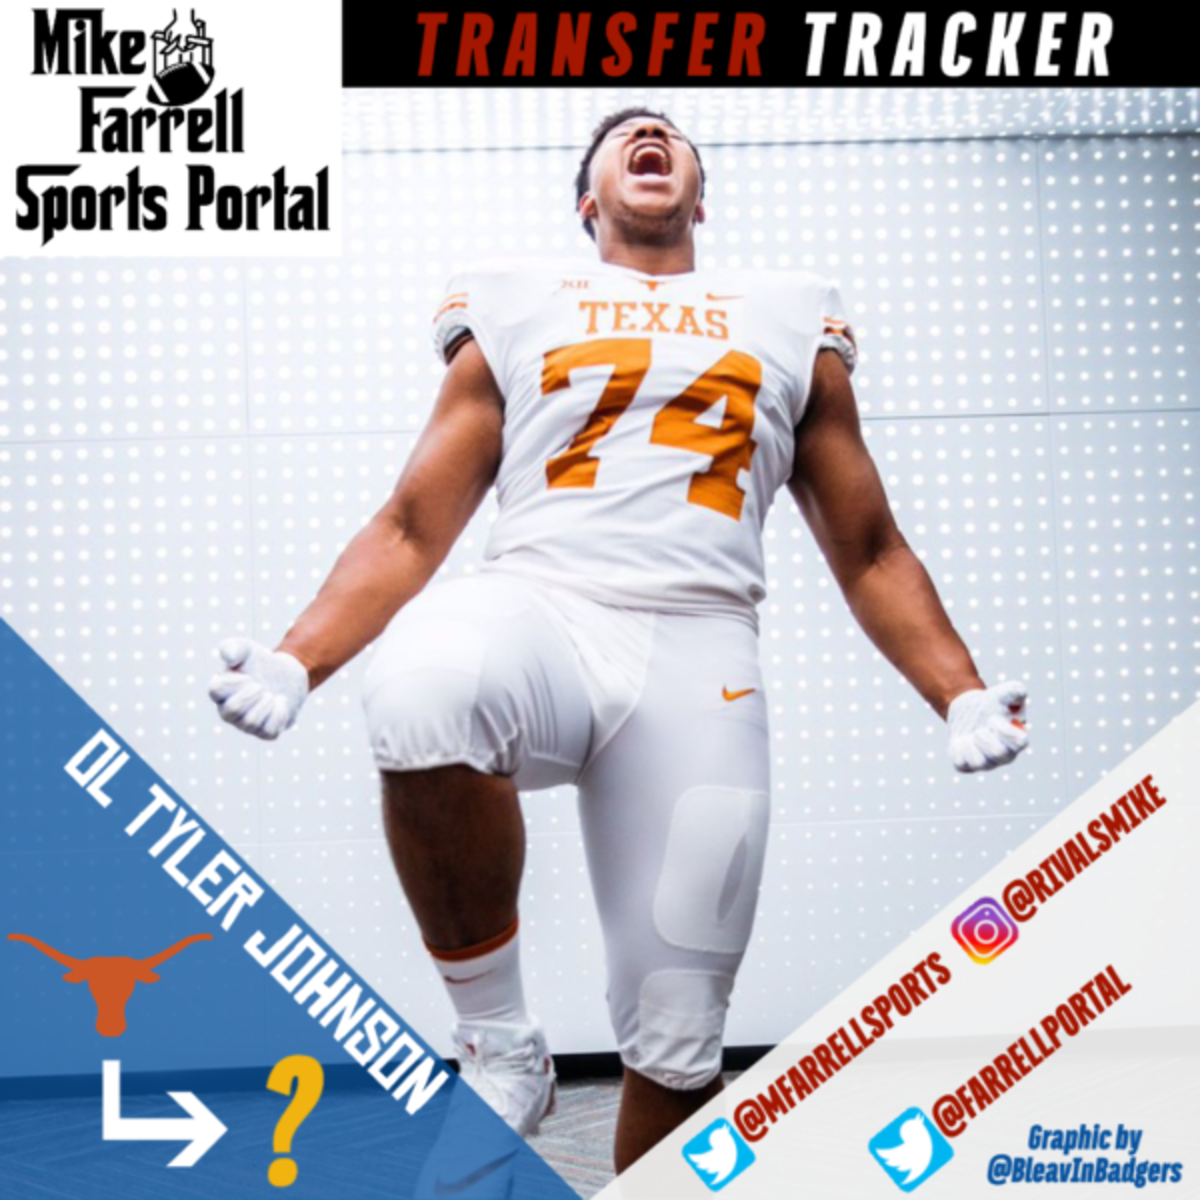 Transfer Tracker Insta - Tyler Johnson